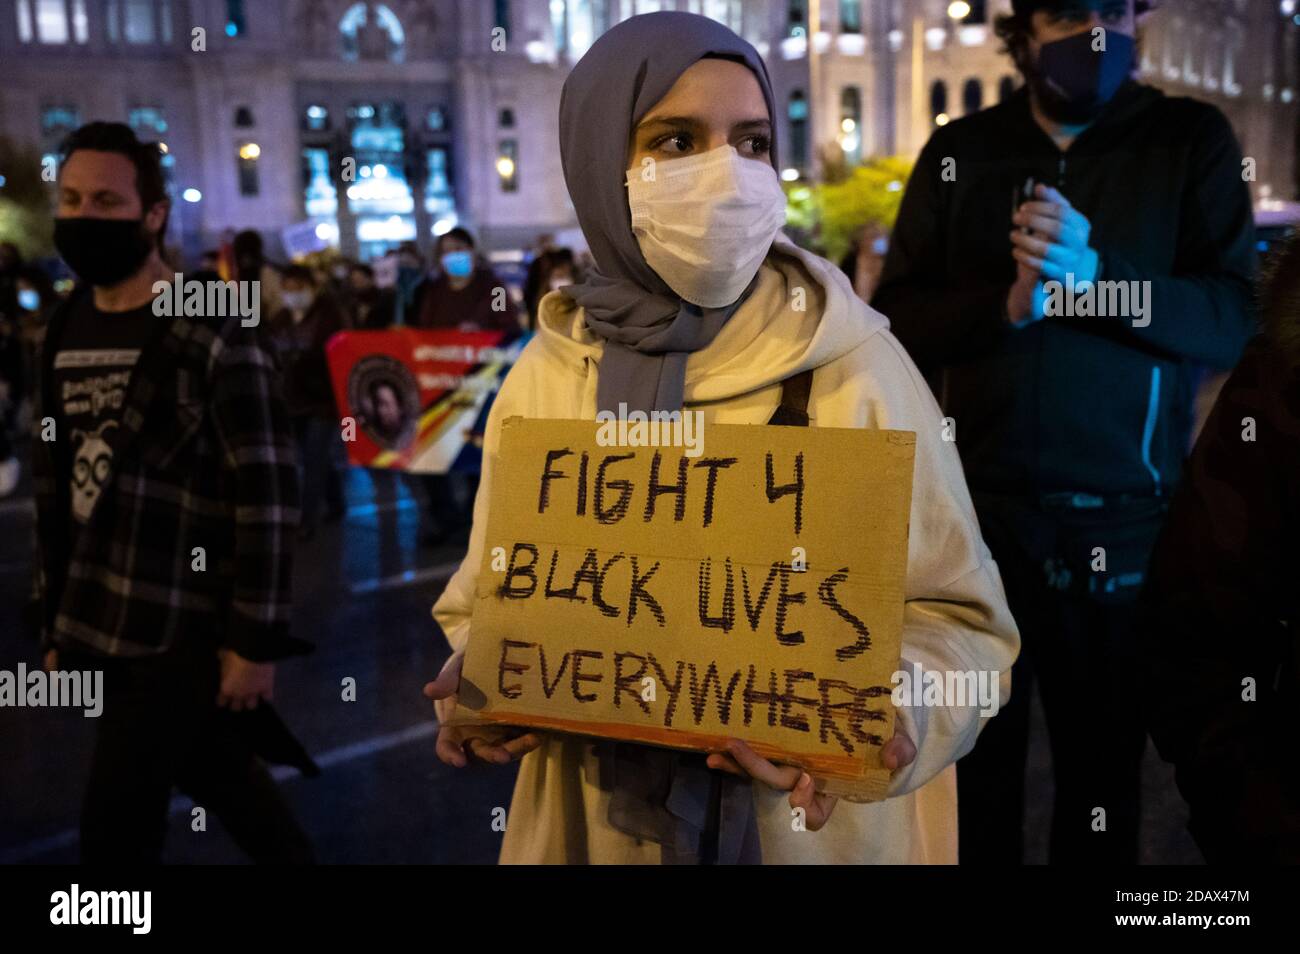 Madrid, España. 15 de noviembre de 2020. Una mujer portando un cartel que sostiene vidas negras durante una protesta contra el racismo y la xenofobia. Crédito: Marcos del Mazo/Alamy Live News Foto de stock